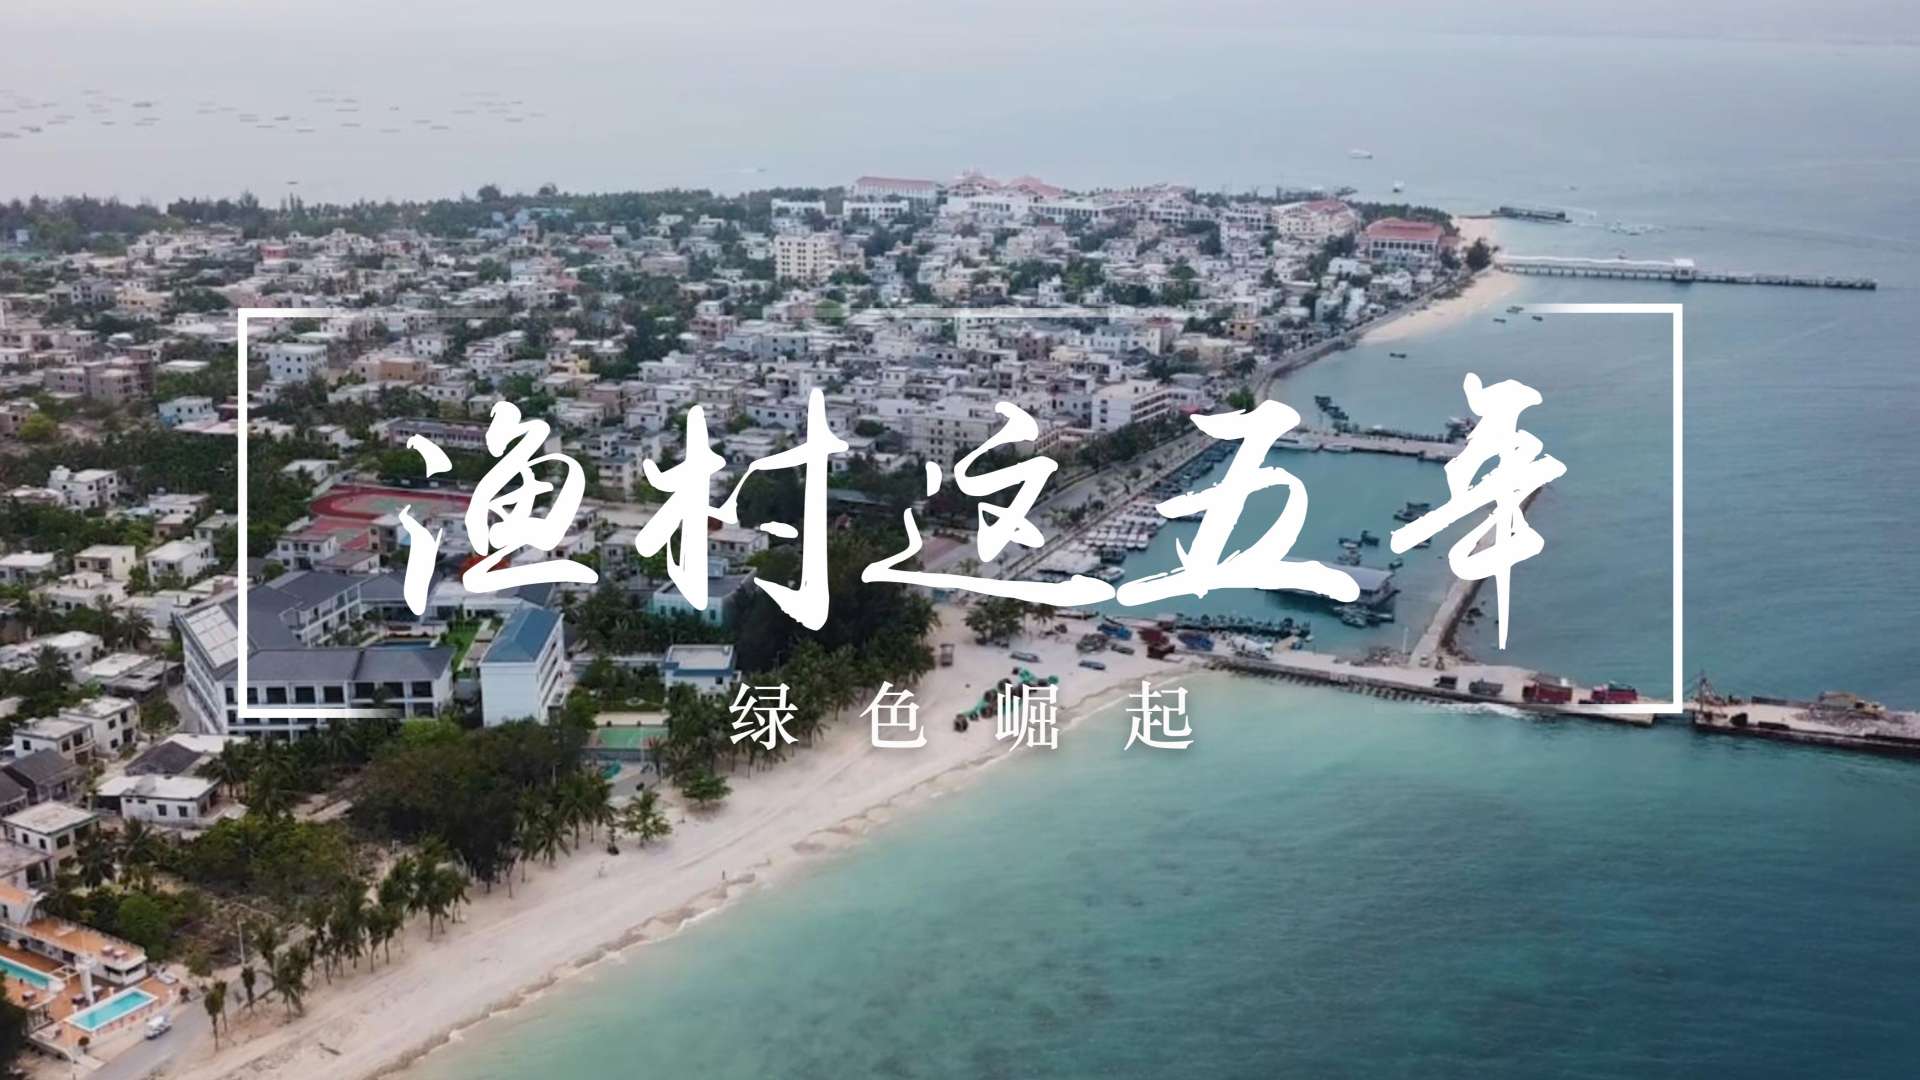 蓬岛藏影第六季《渔村这五年》